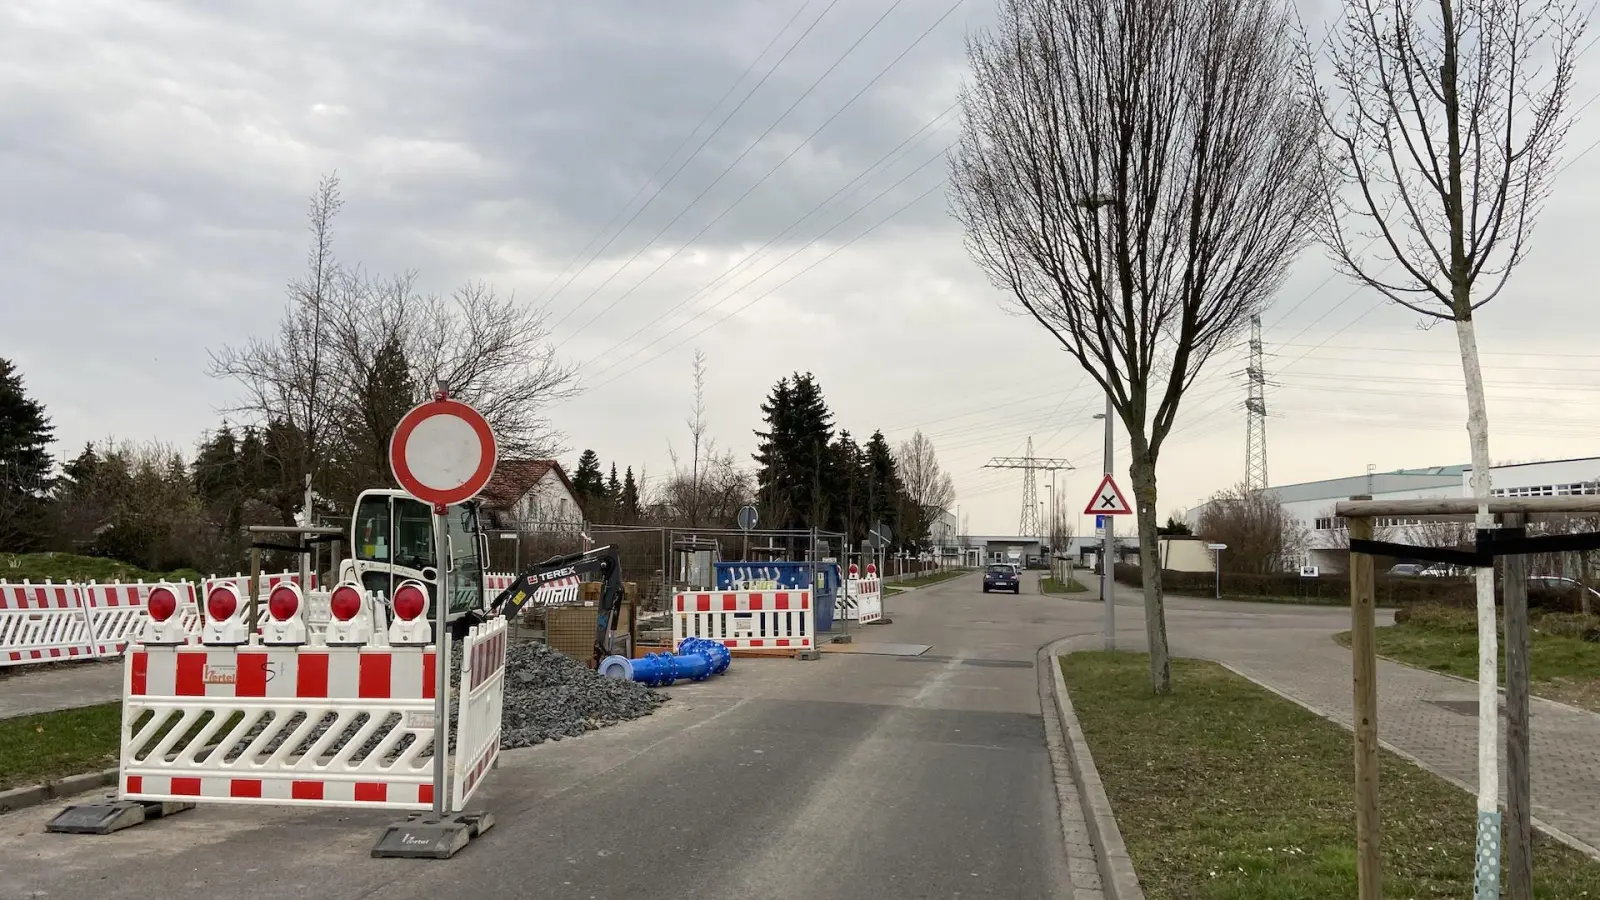 Otto-Schmidt-Straße weiter gesperrt - Ordnungsamt kontrolliert (Foto: taucha-kompakt.de)